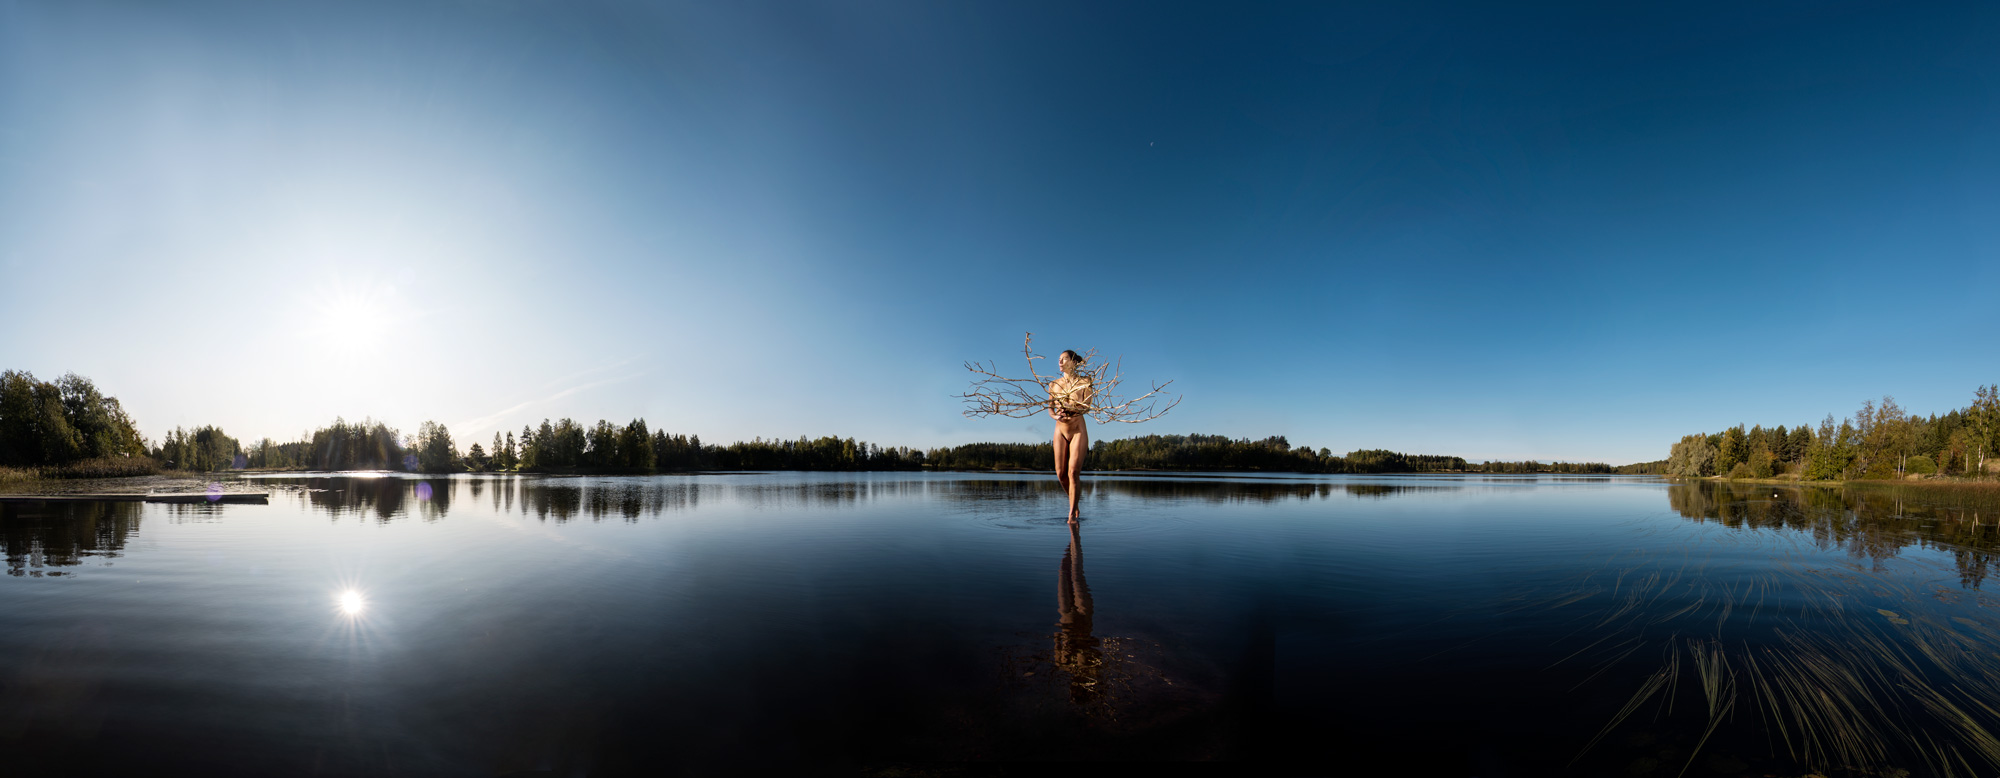 KÄÄNNA JUURI X. Fotografía y retoque digital. Lago Mustianoja, Hämeenkyrö, Finlandia